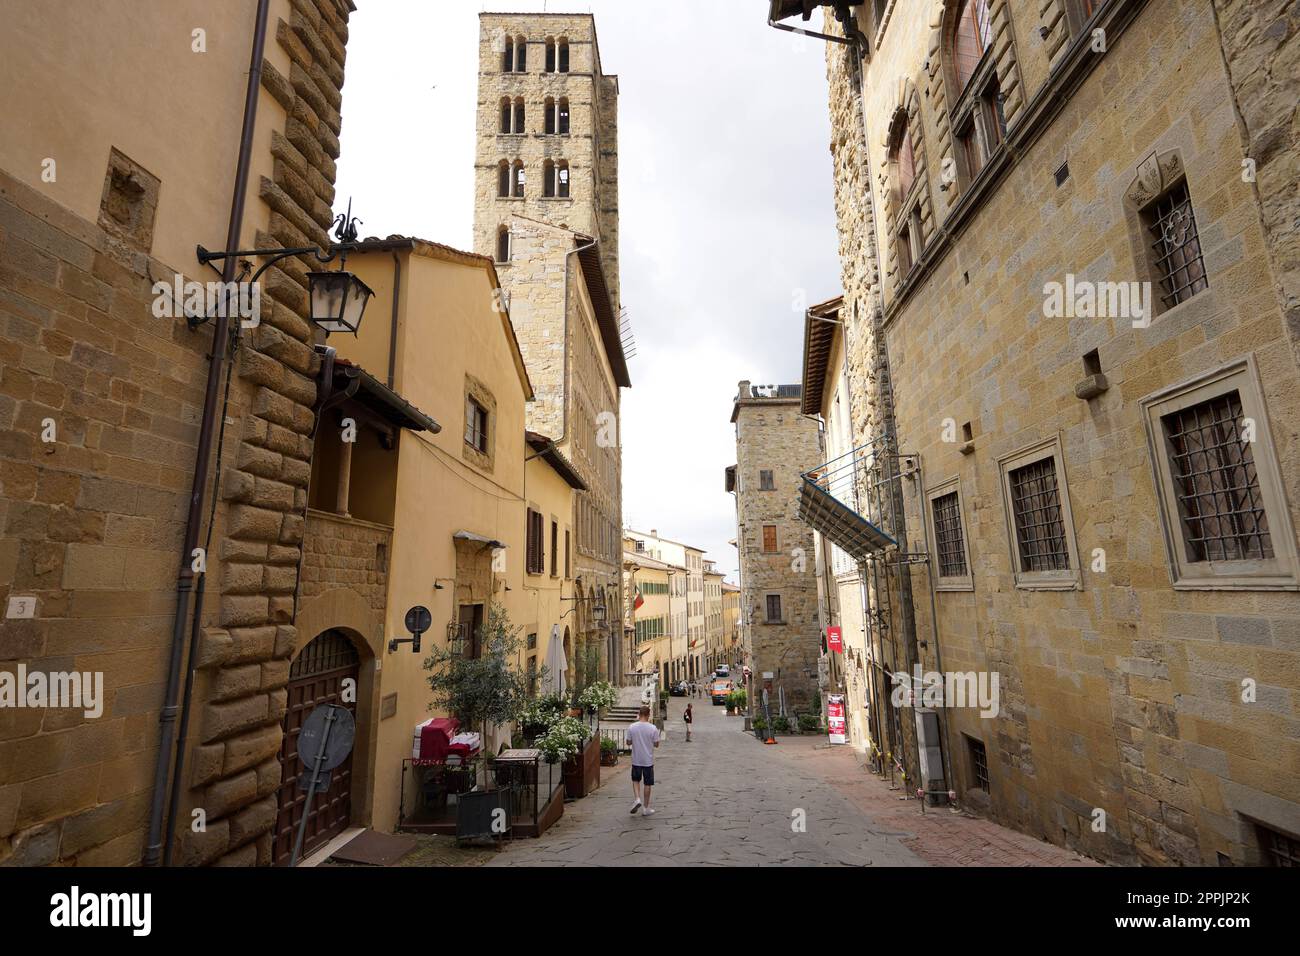 AREZZO, ITALY - JUNE 24, 2022: Historic medieval town of Arezzo, Tuscany, Italy Stock Photo